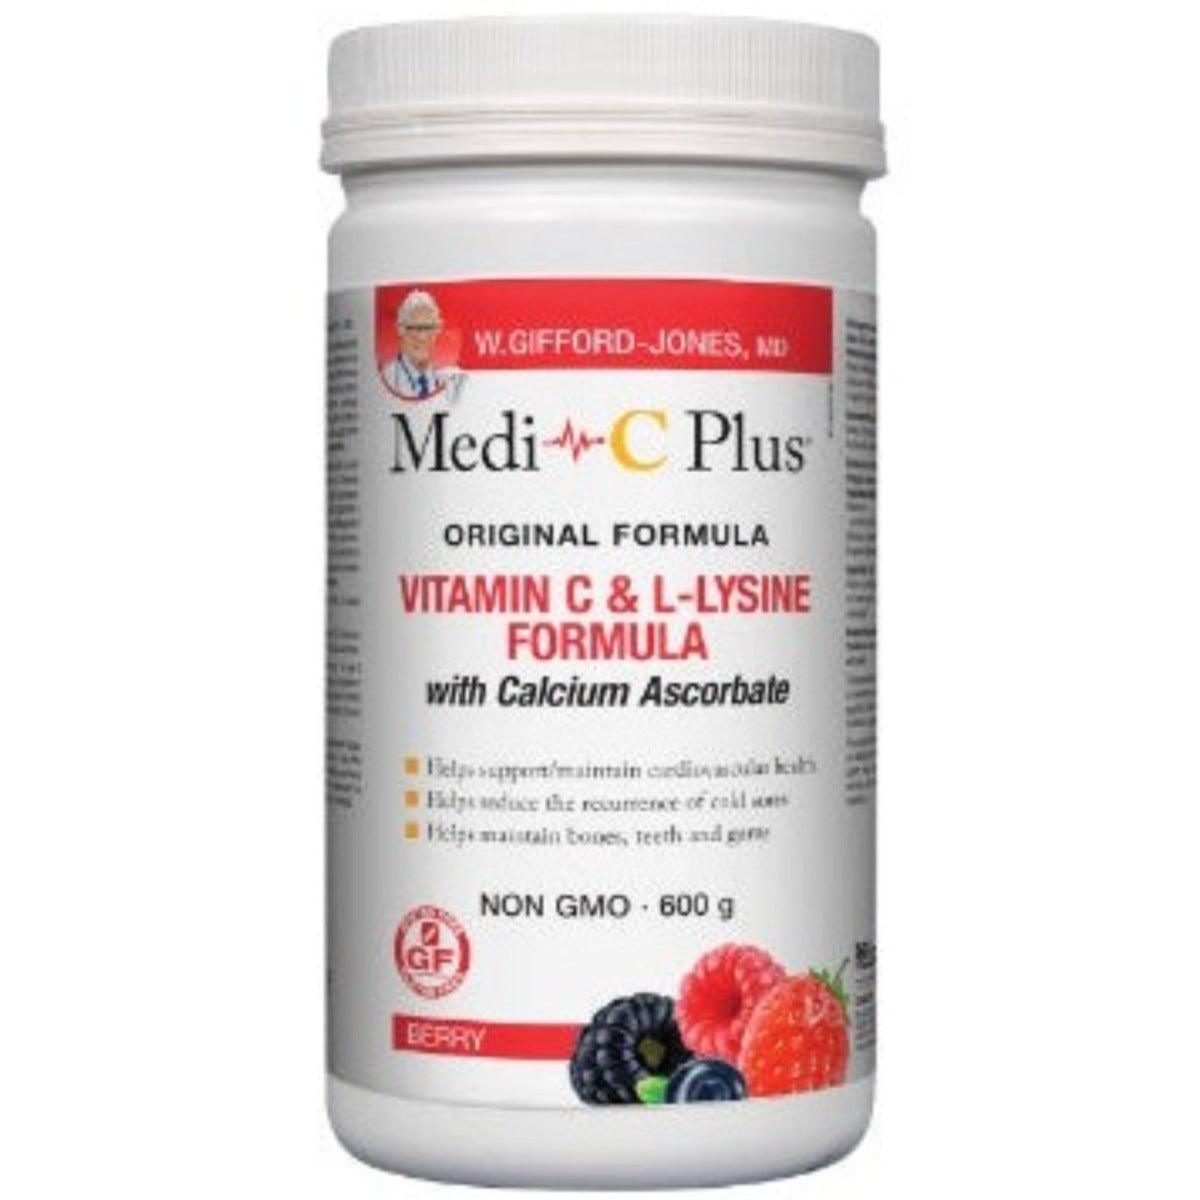 Medi C-Plus with Calcium Ascorbate(Berry)-600G Vitamins - Vitamin C at Village Vitamin Store